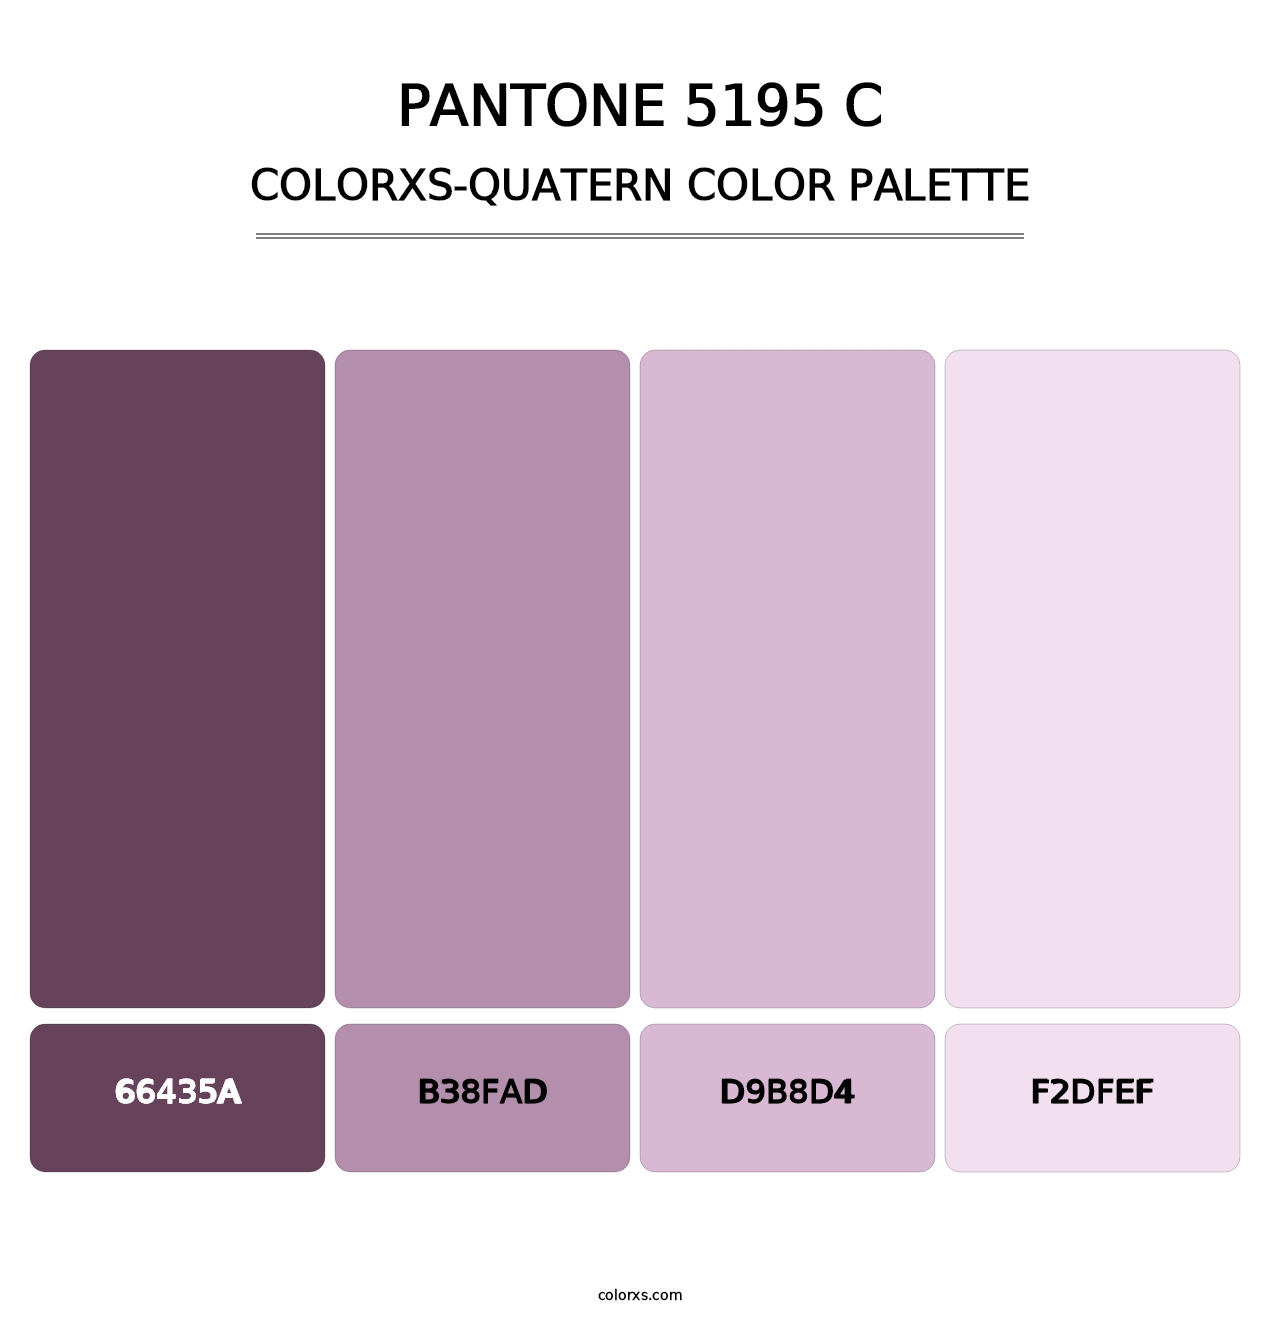 PANTONE 5195 C - Colorxs Quatern Palette